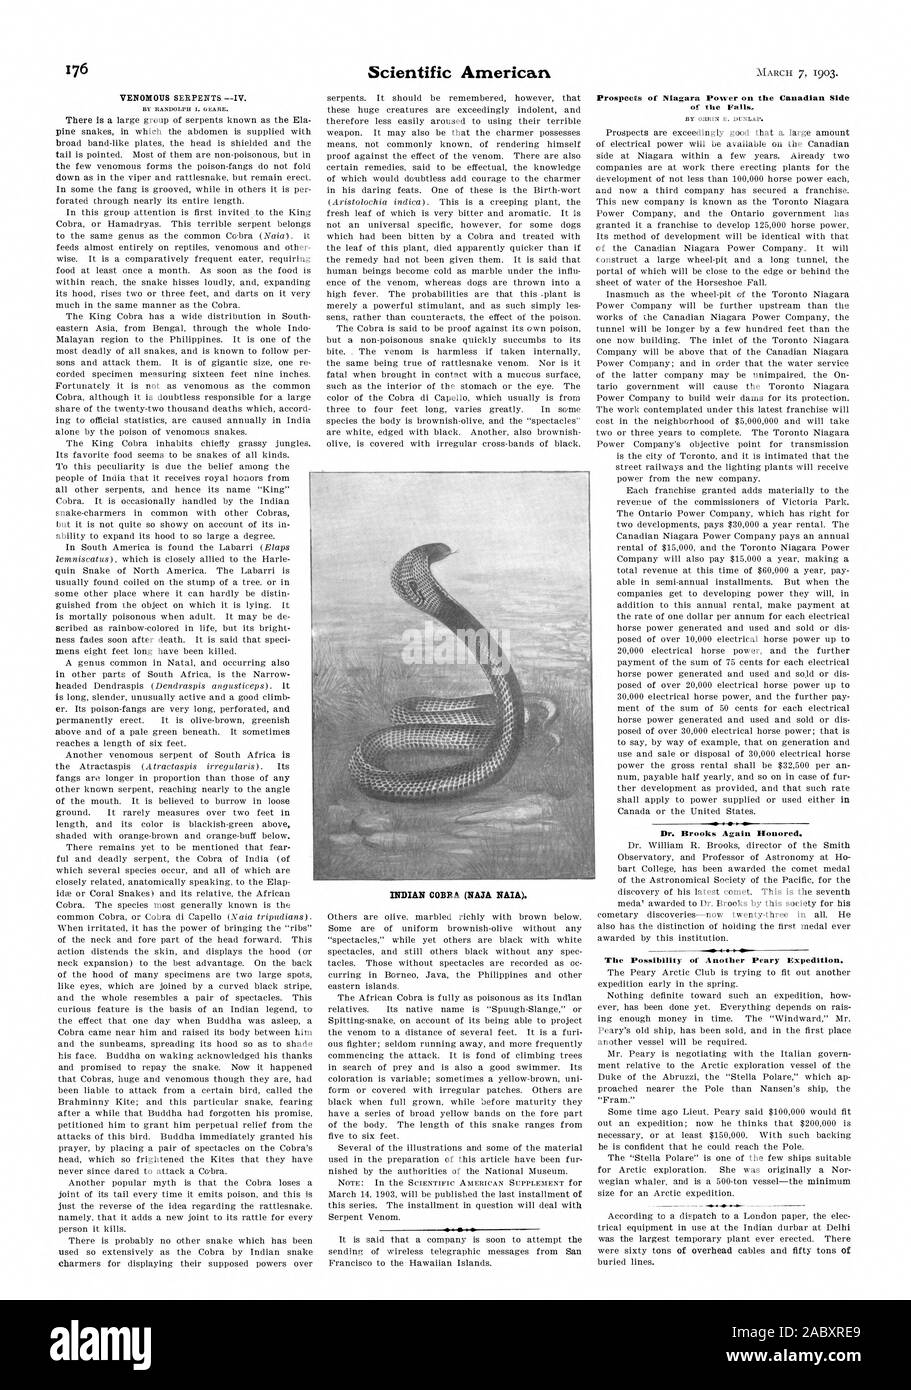 Indische Kobra (NASA NAIA). Perspektiven der Niagara Power auf der kanadischen Seite der Wasserfälle. Dr. Brooks wieder geehrt. Die Möglichkeit einer anderen Peary Expedition., Scientific American, 1903-03-07 Stockfoto